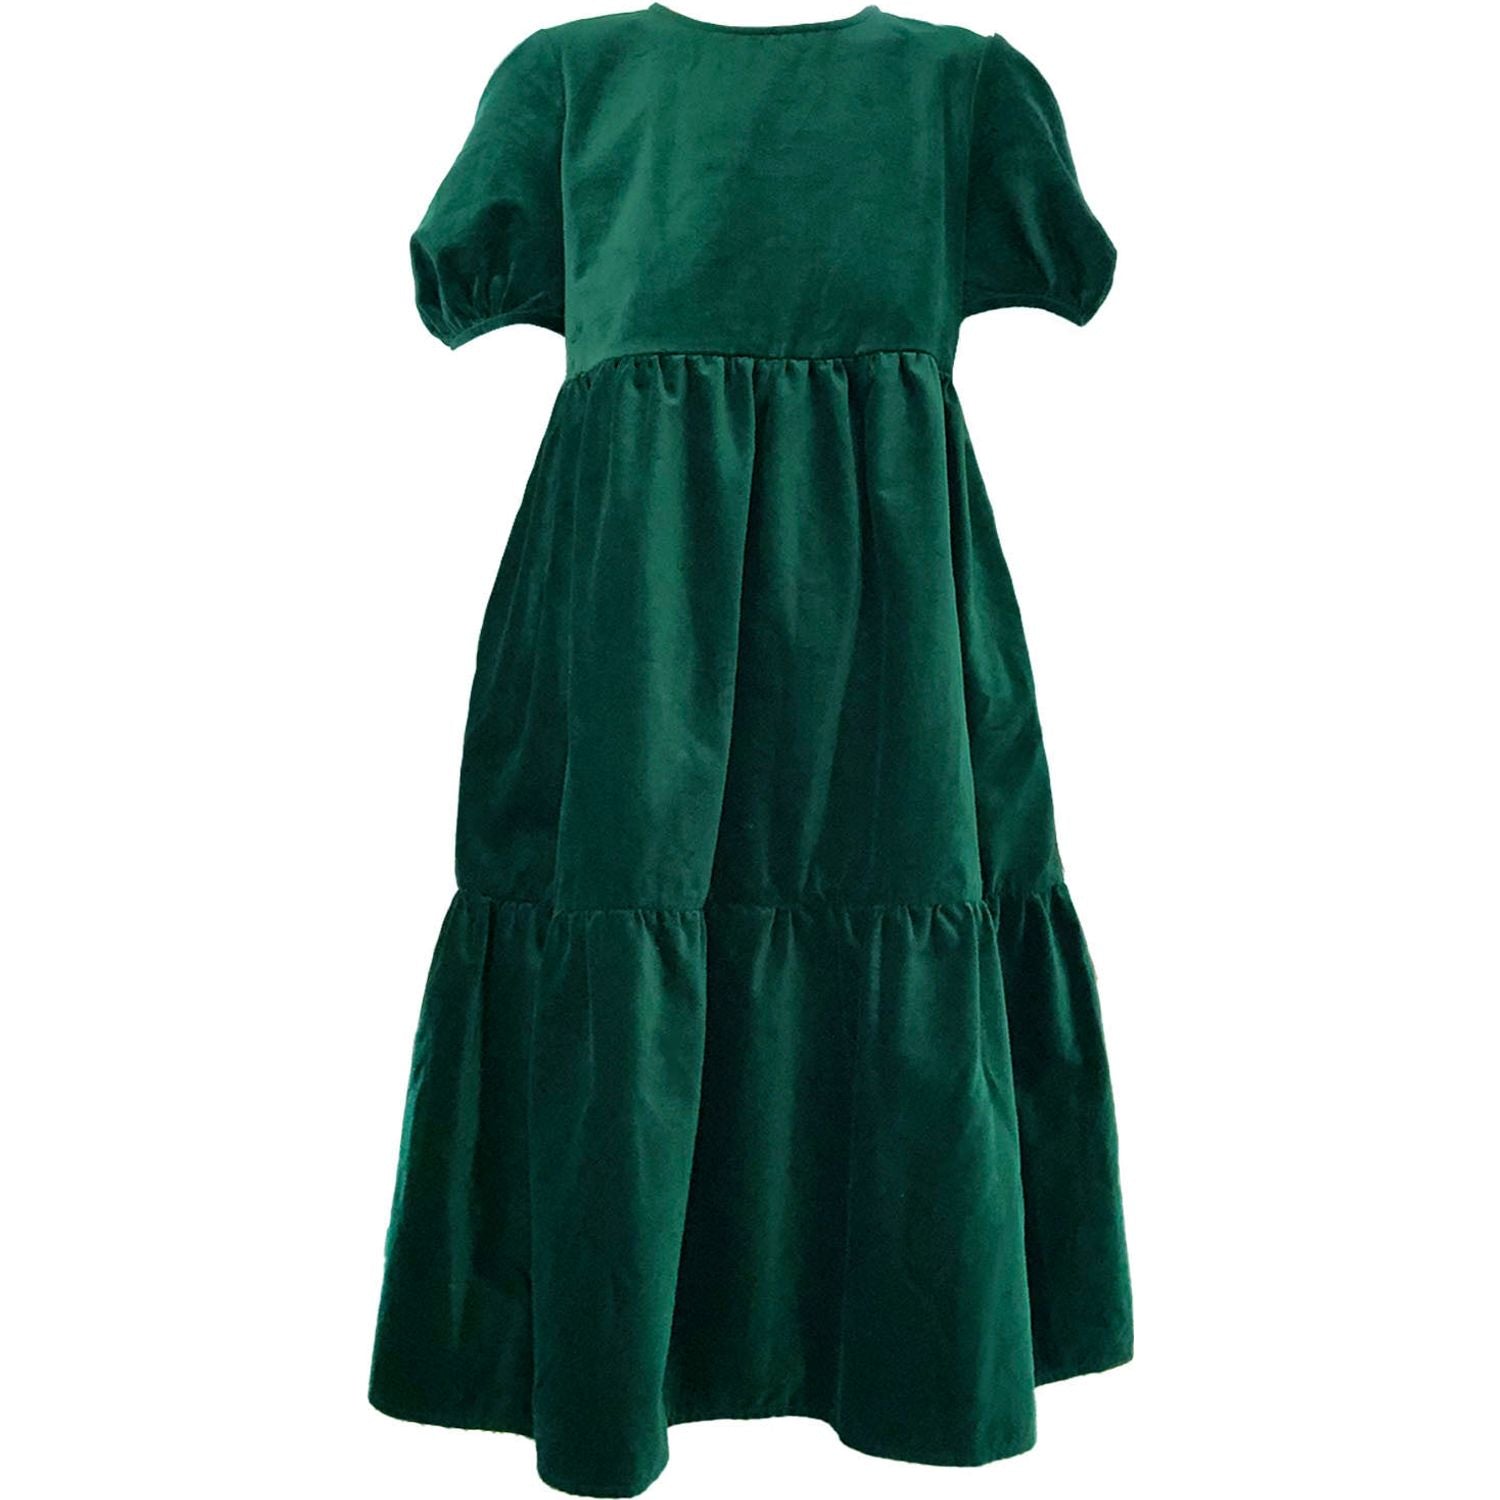 Women's Madeline Dress in Emerald Velvet by Casey Marks